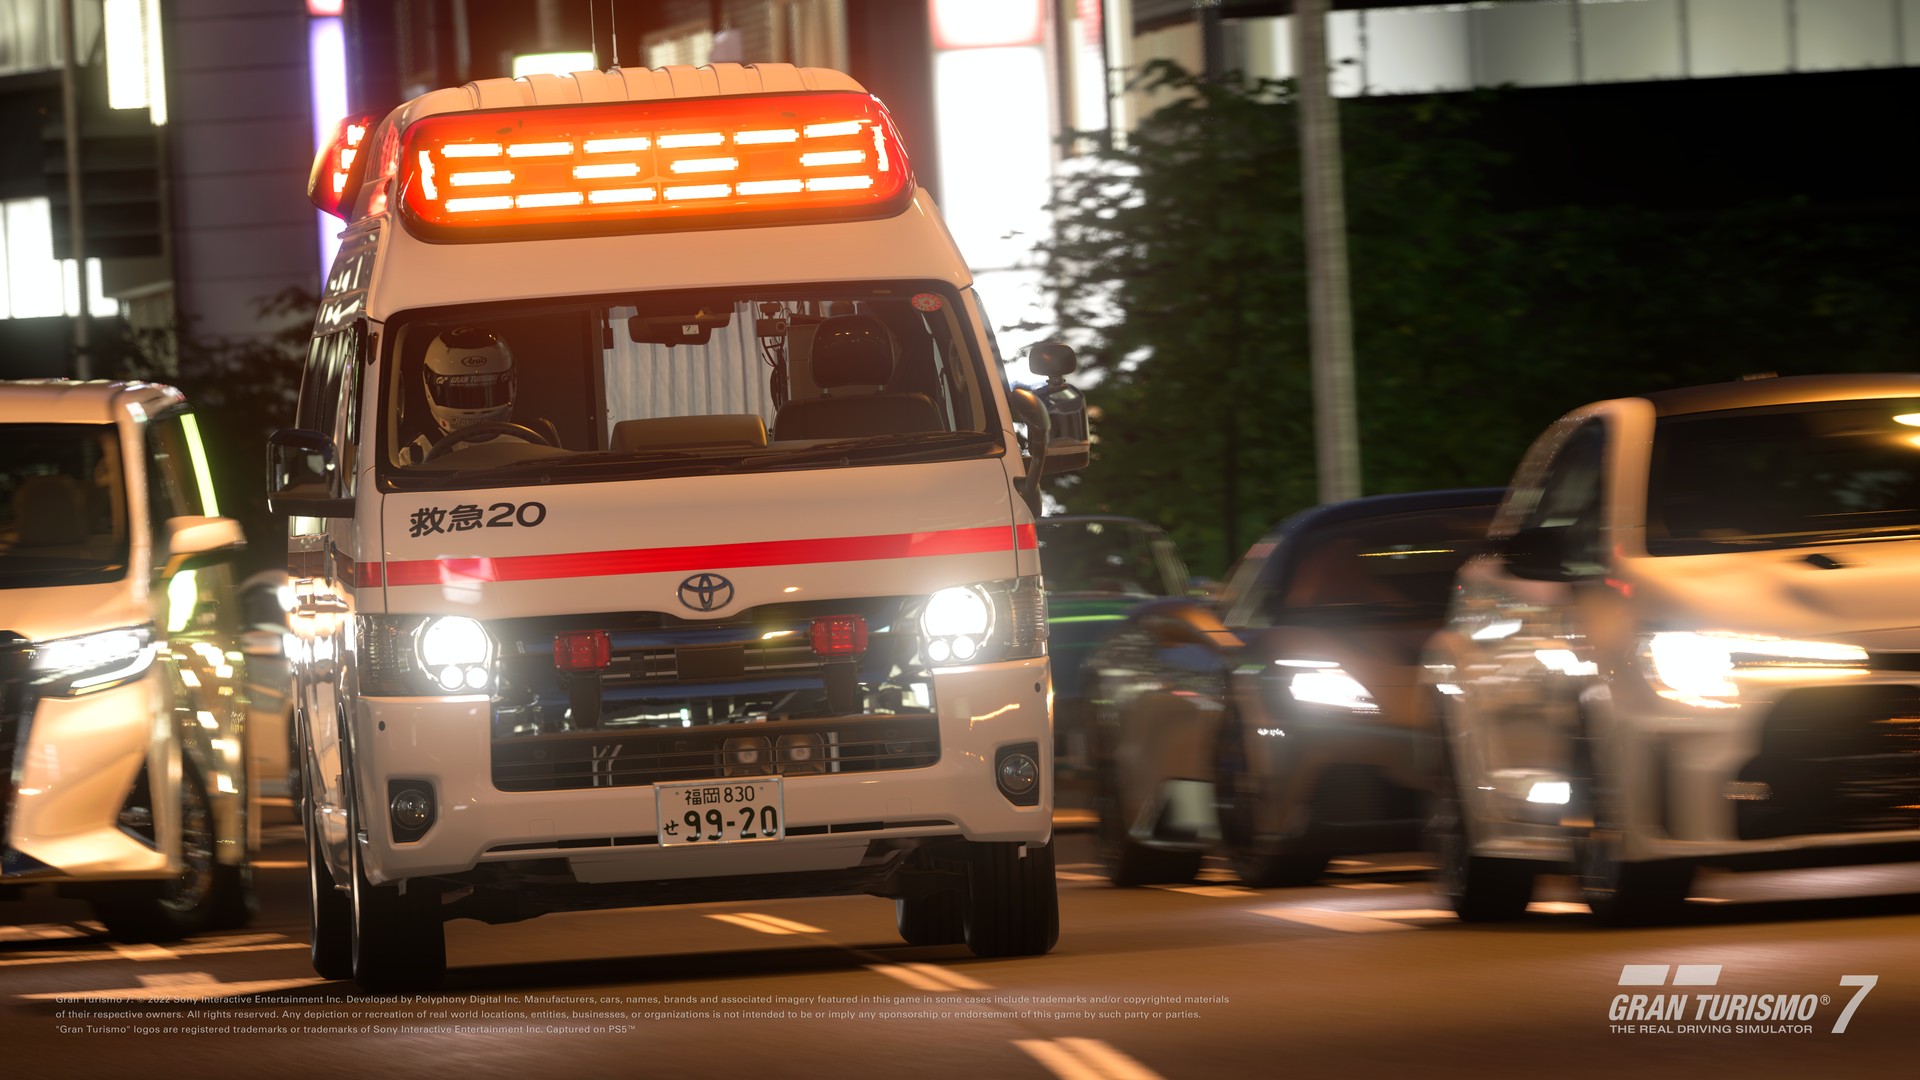 Nova atualização de Gran Turismo 7 tem ambulância